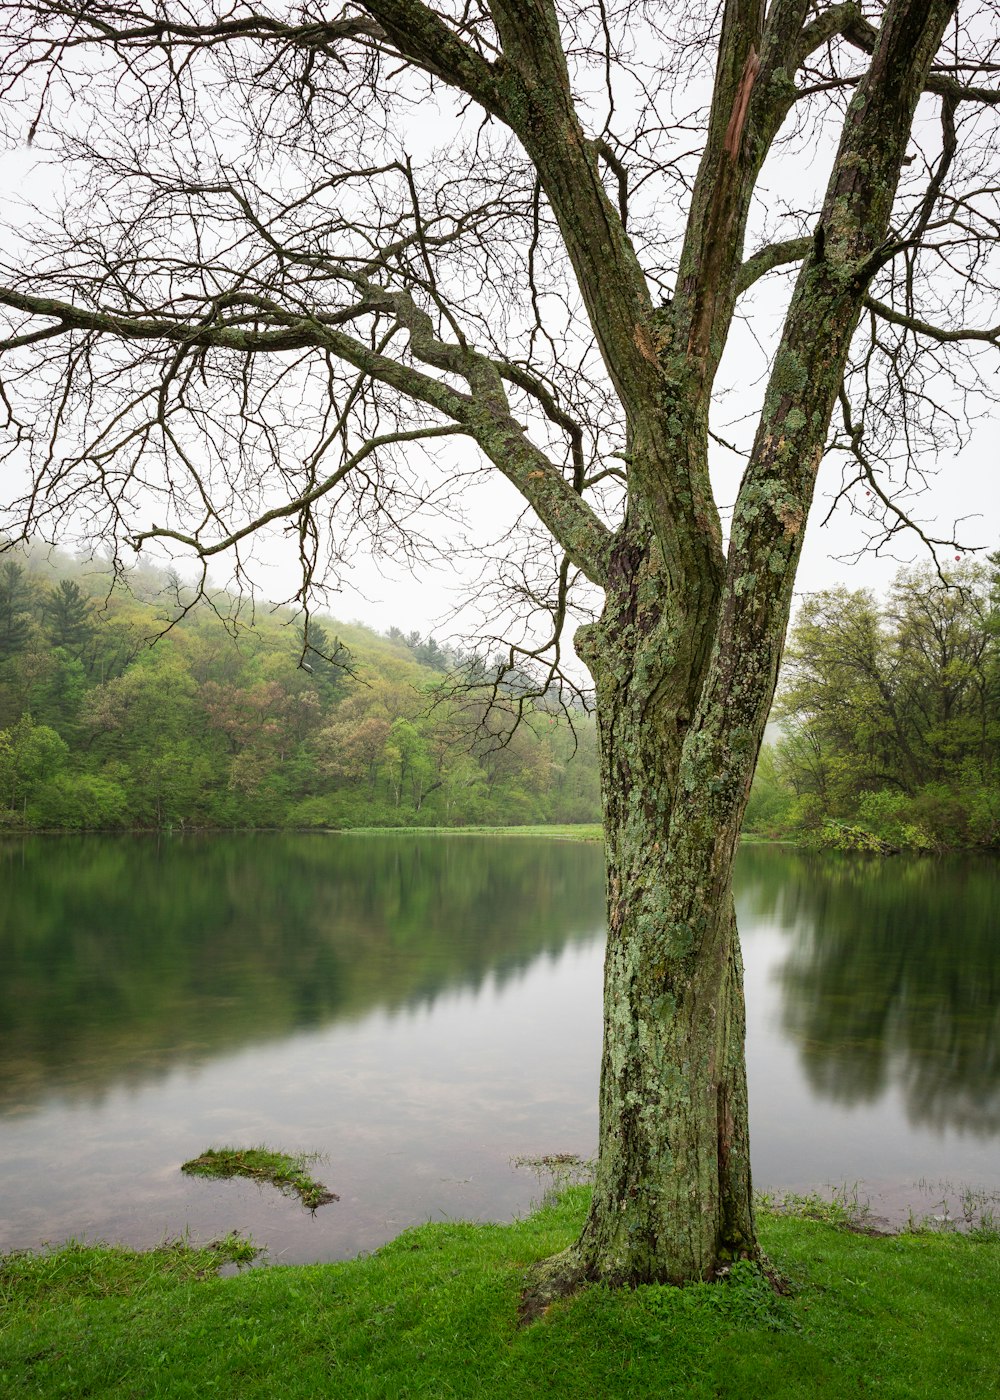 kahler Baum in ruhiger Nähe eines Gewässers